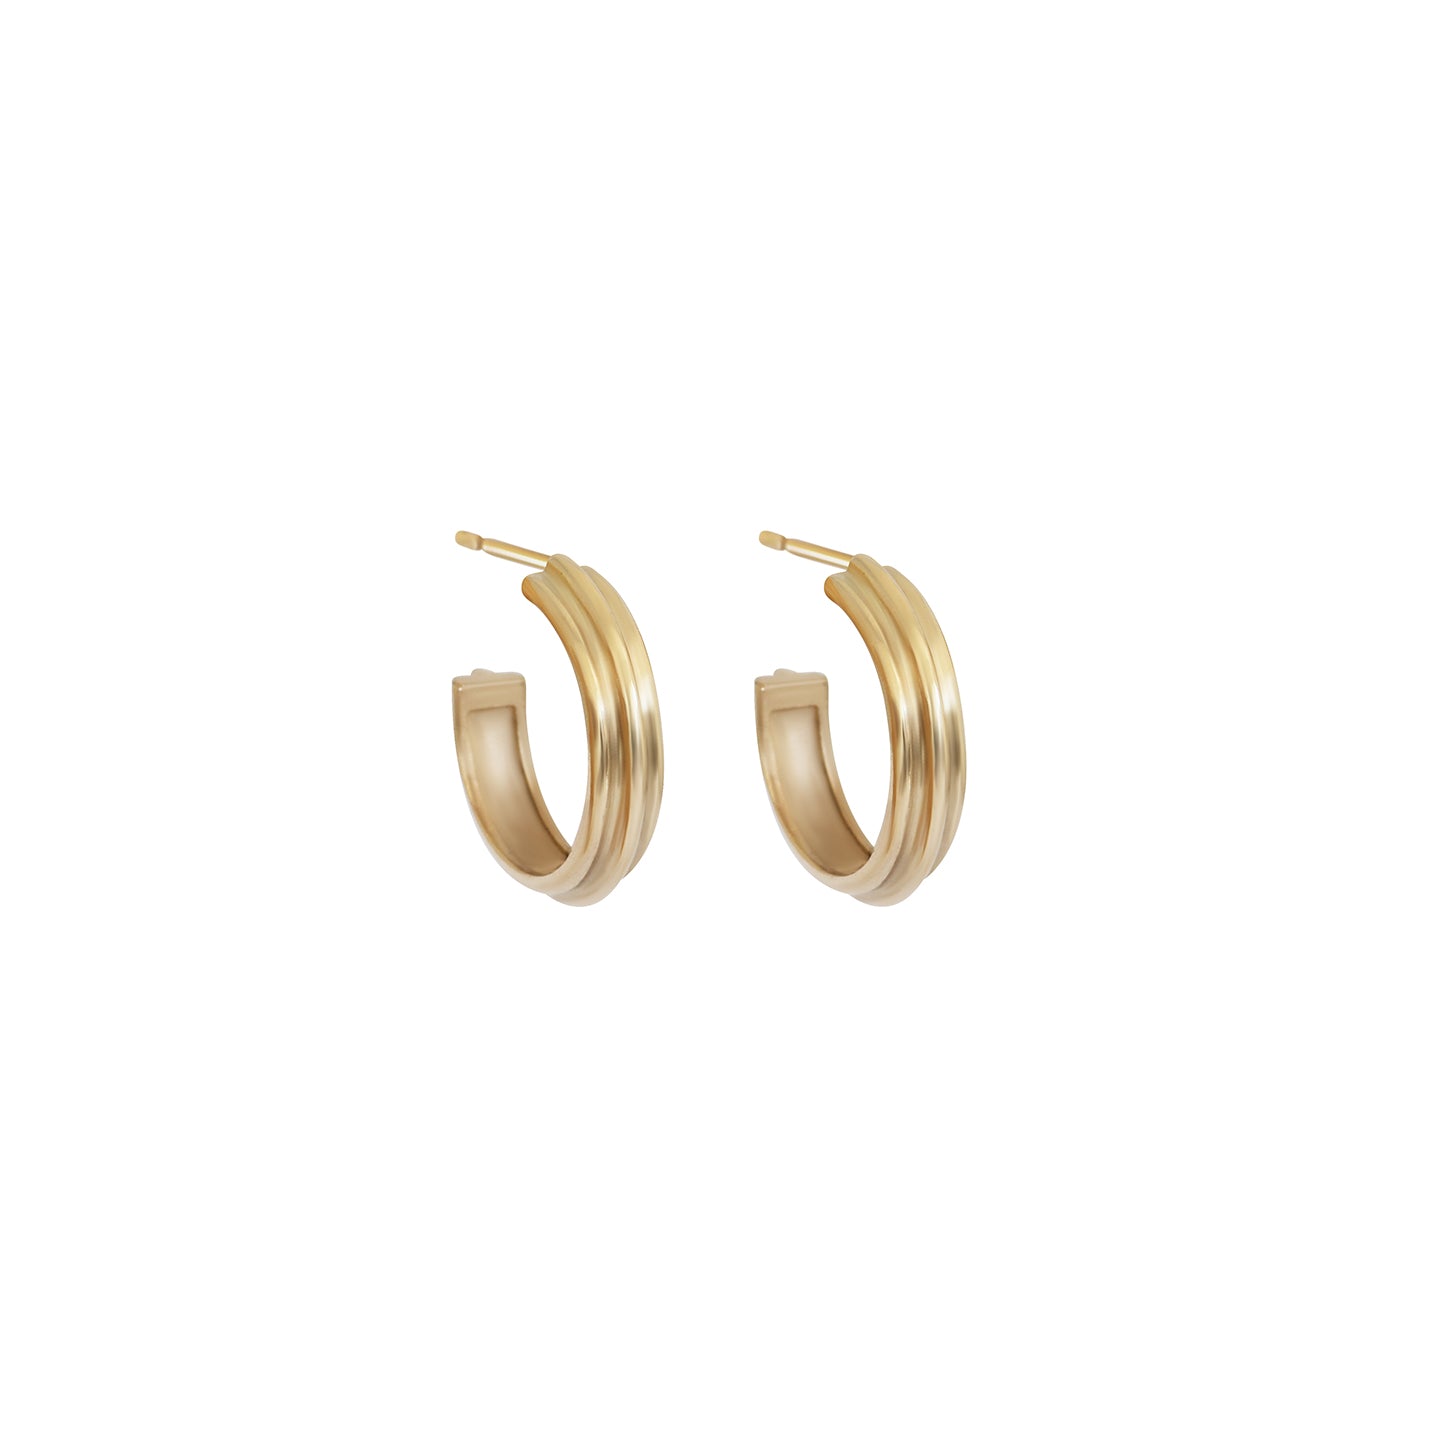 Pair of Cornice Hoop Earrings